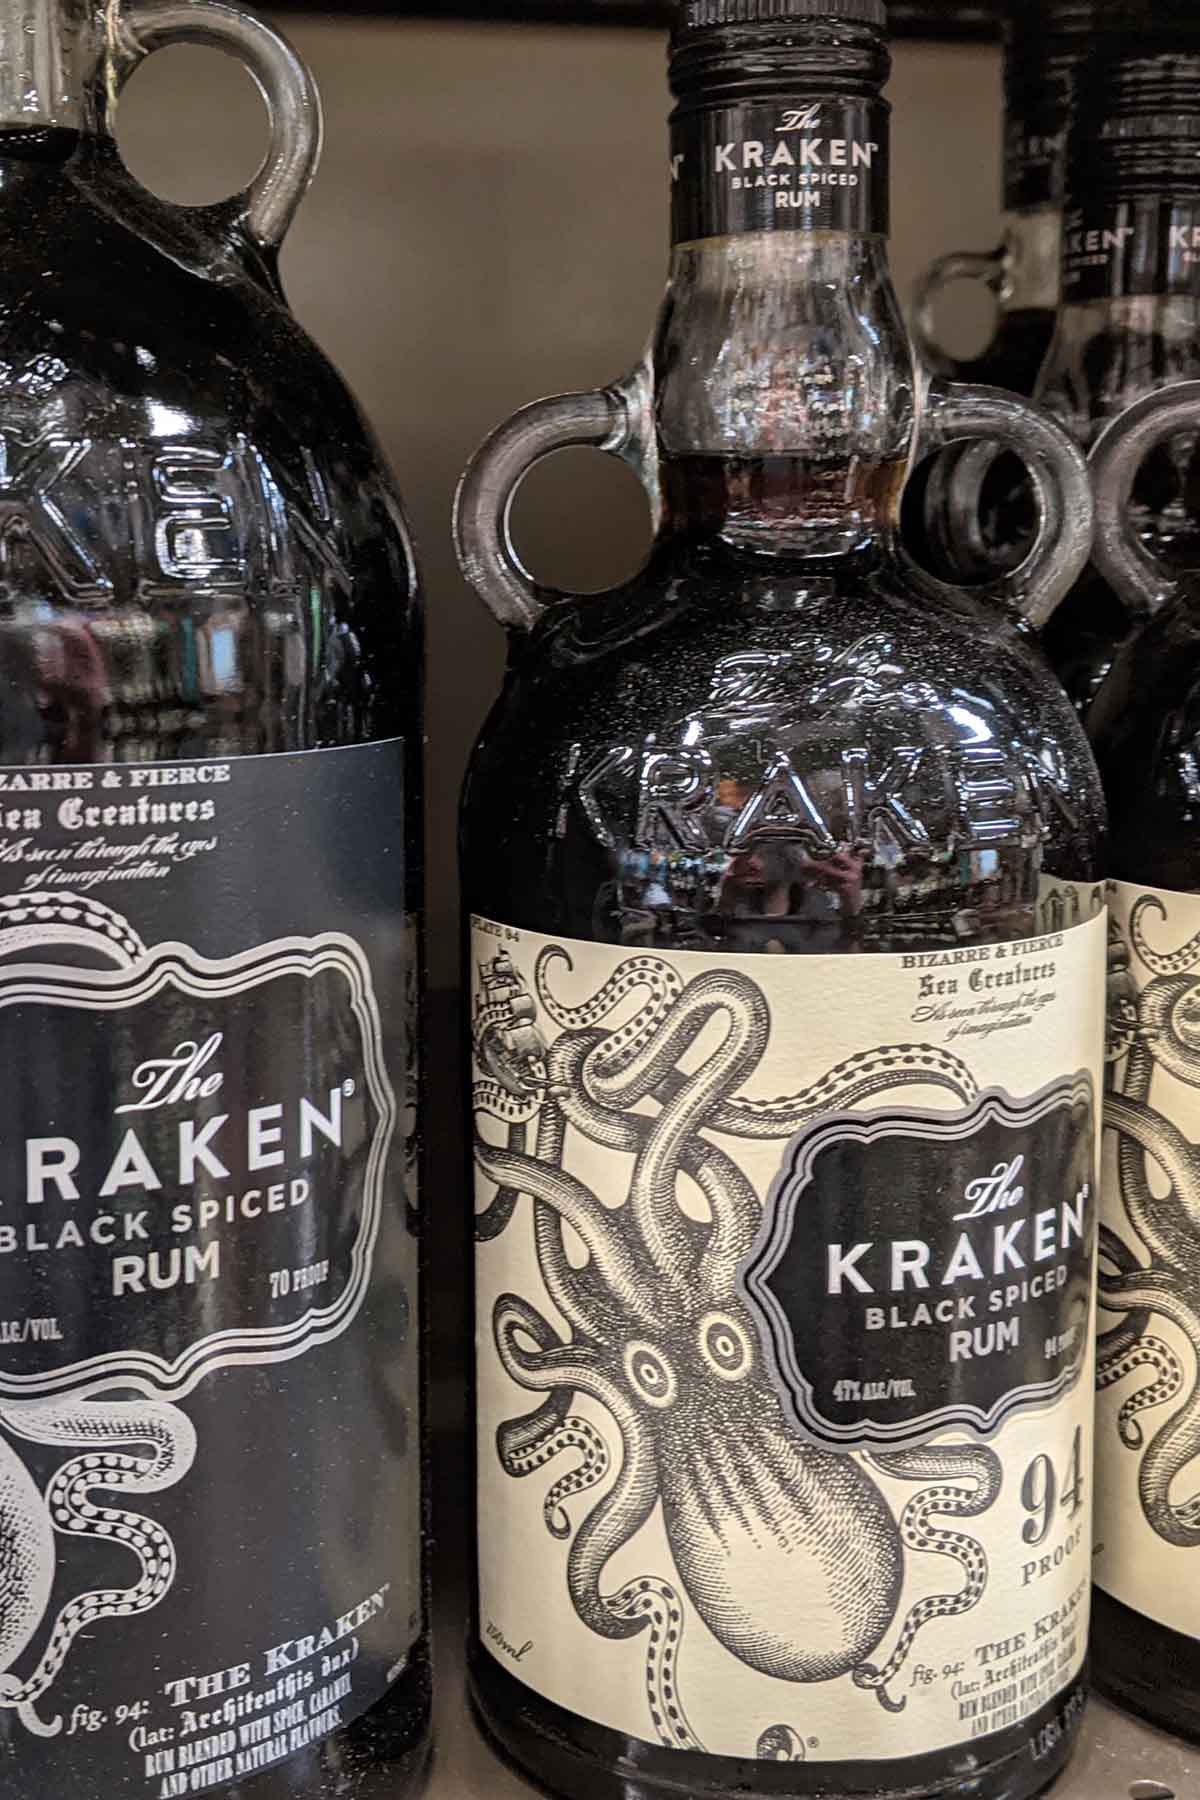 bottle of Kraken black spiced rum.